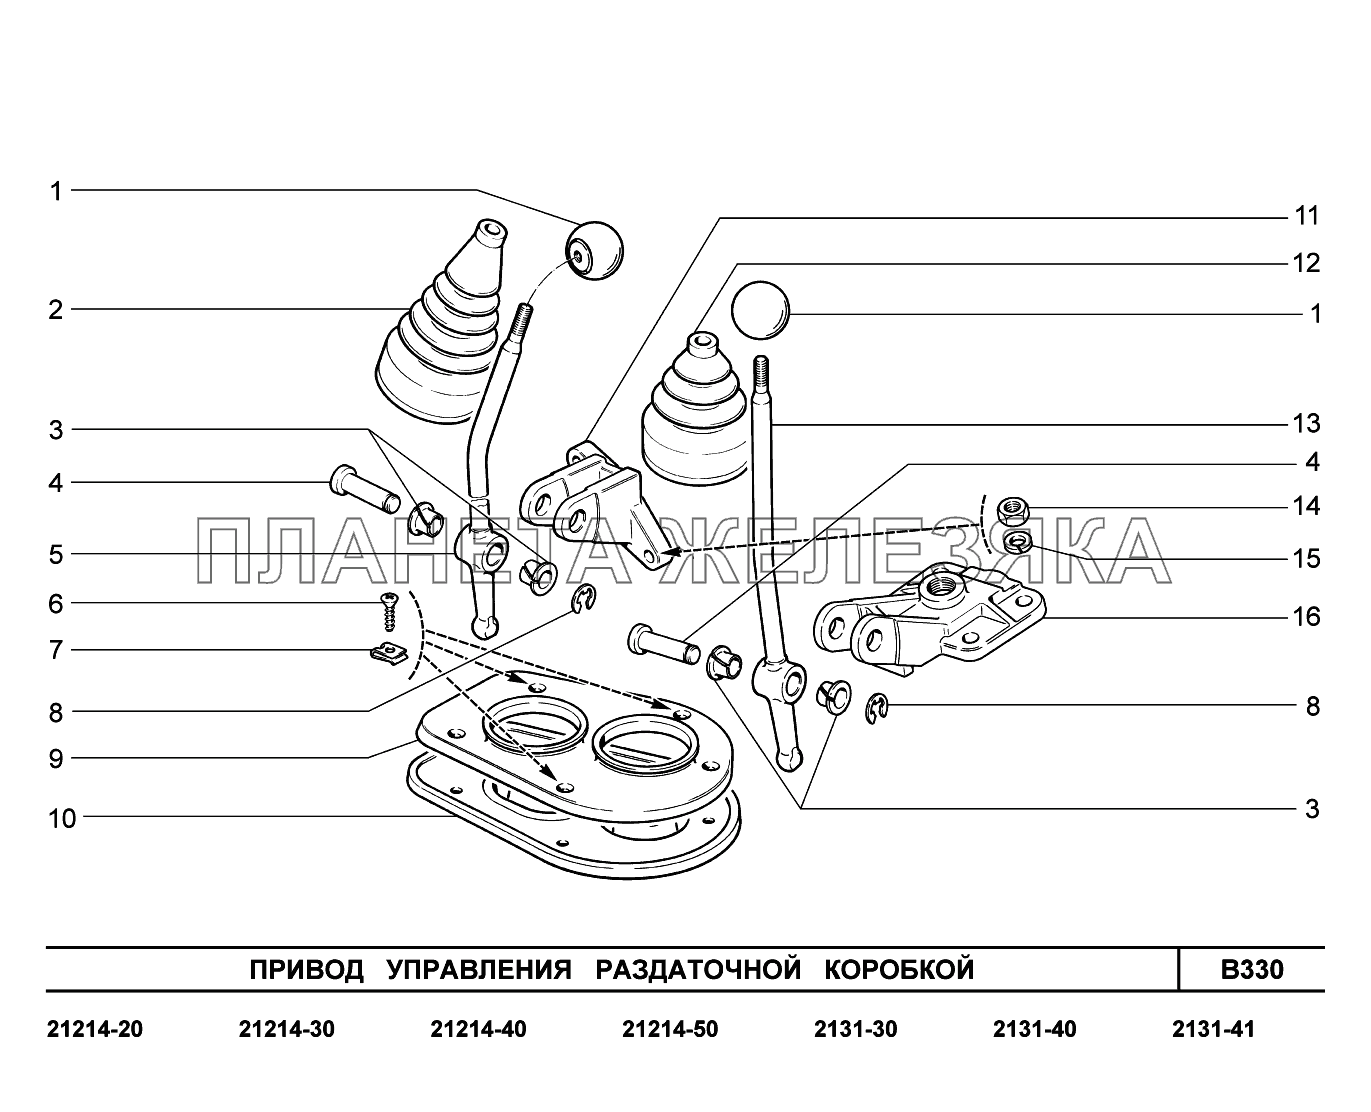 B330. Привод управления раздаточной коробкой LADA 4x4